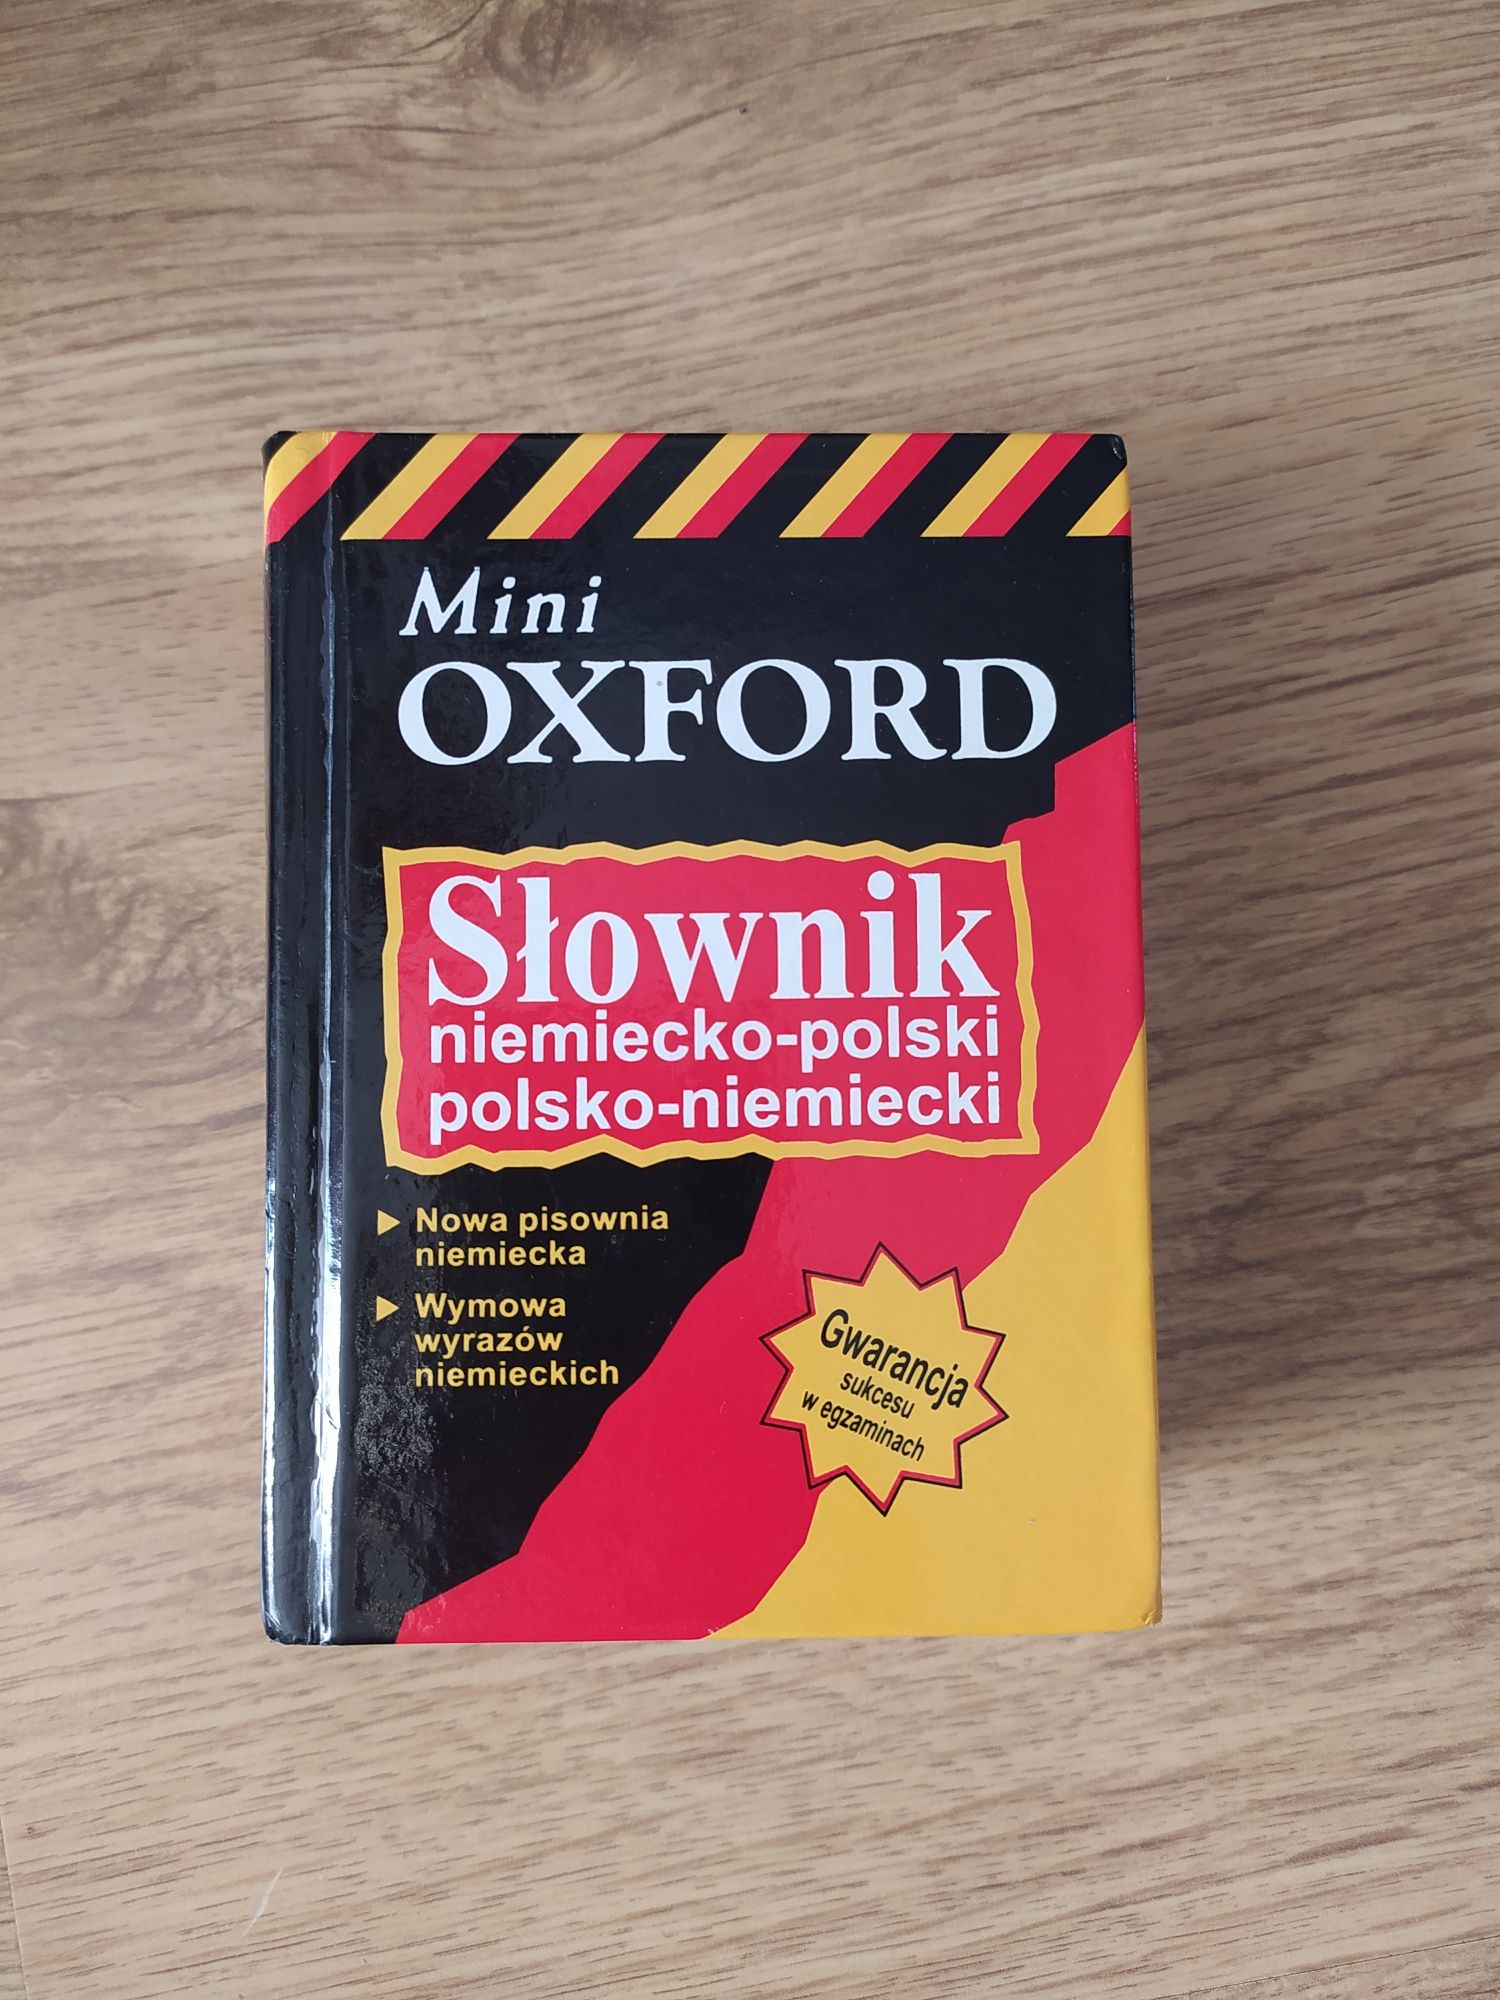 Mini Oxford słownik niemiecko-polski